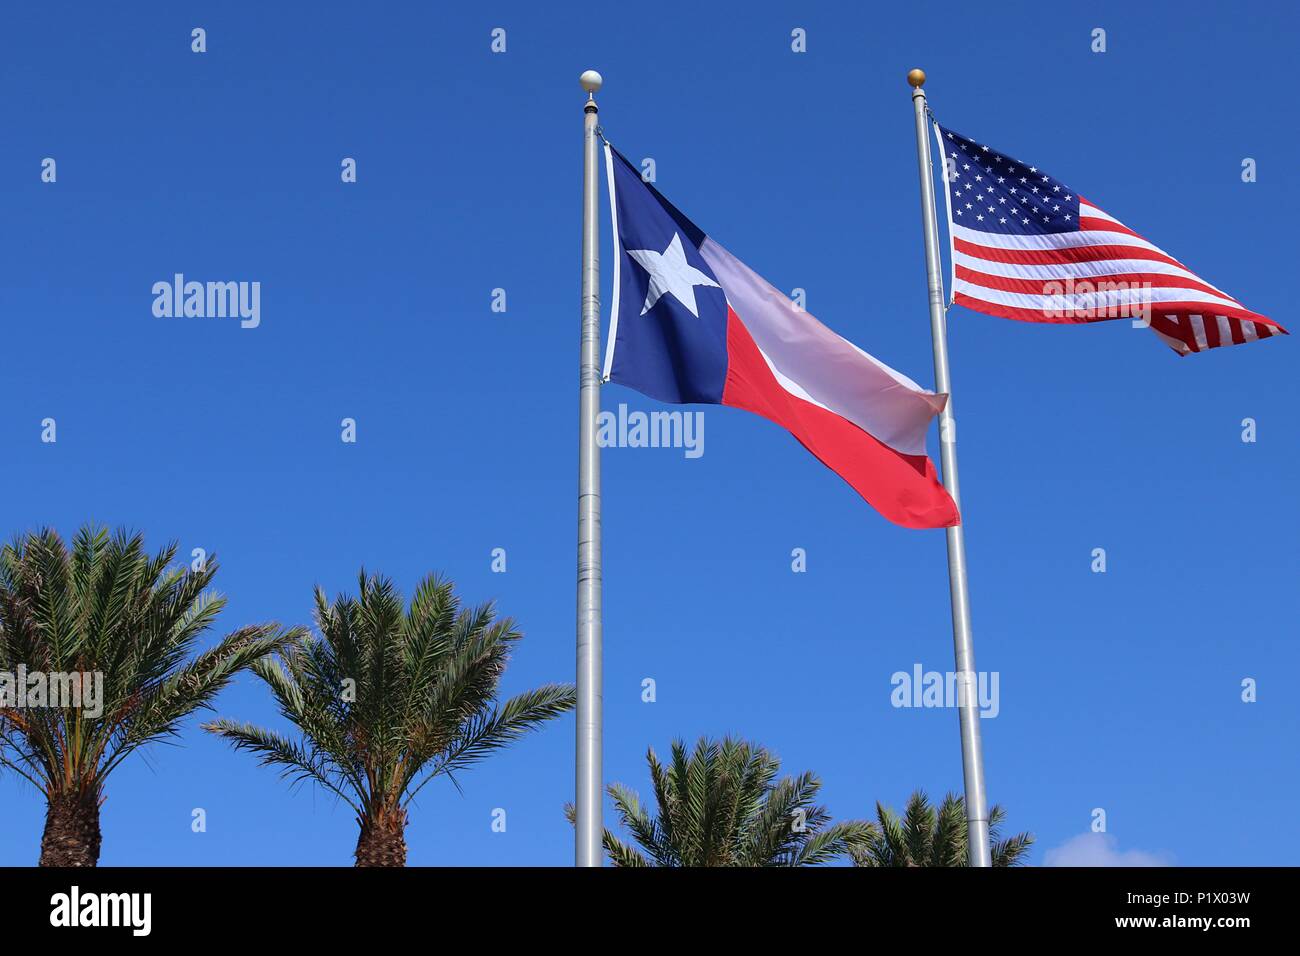 Texas drapeau, Lone Star State flag et Etats-Unis d'Amérique US flag contre fond de ciel bleu et de palmiers Banque D'Images